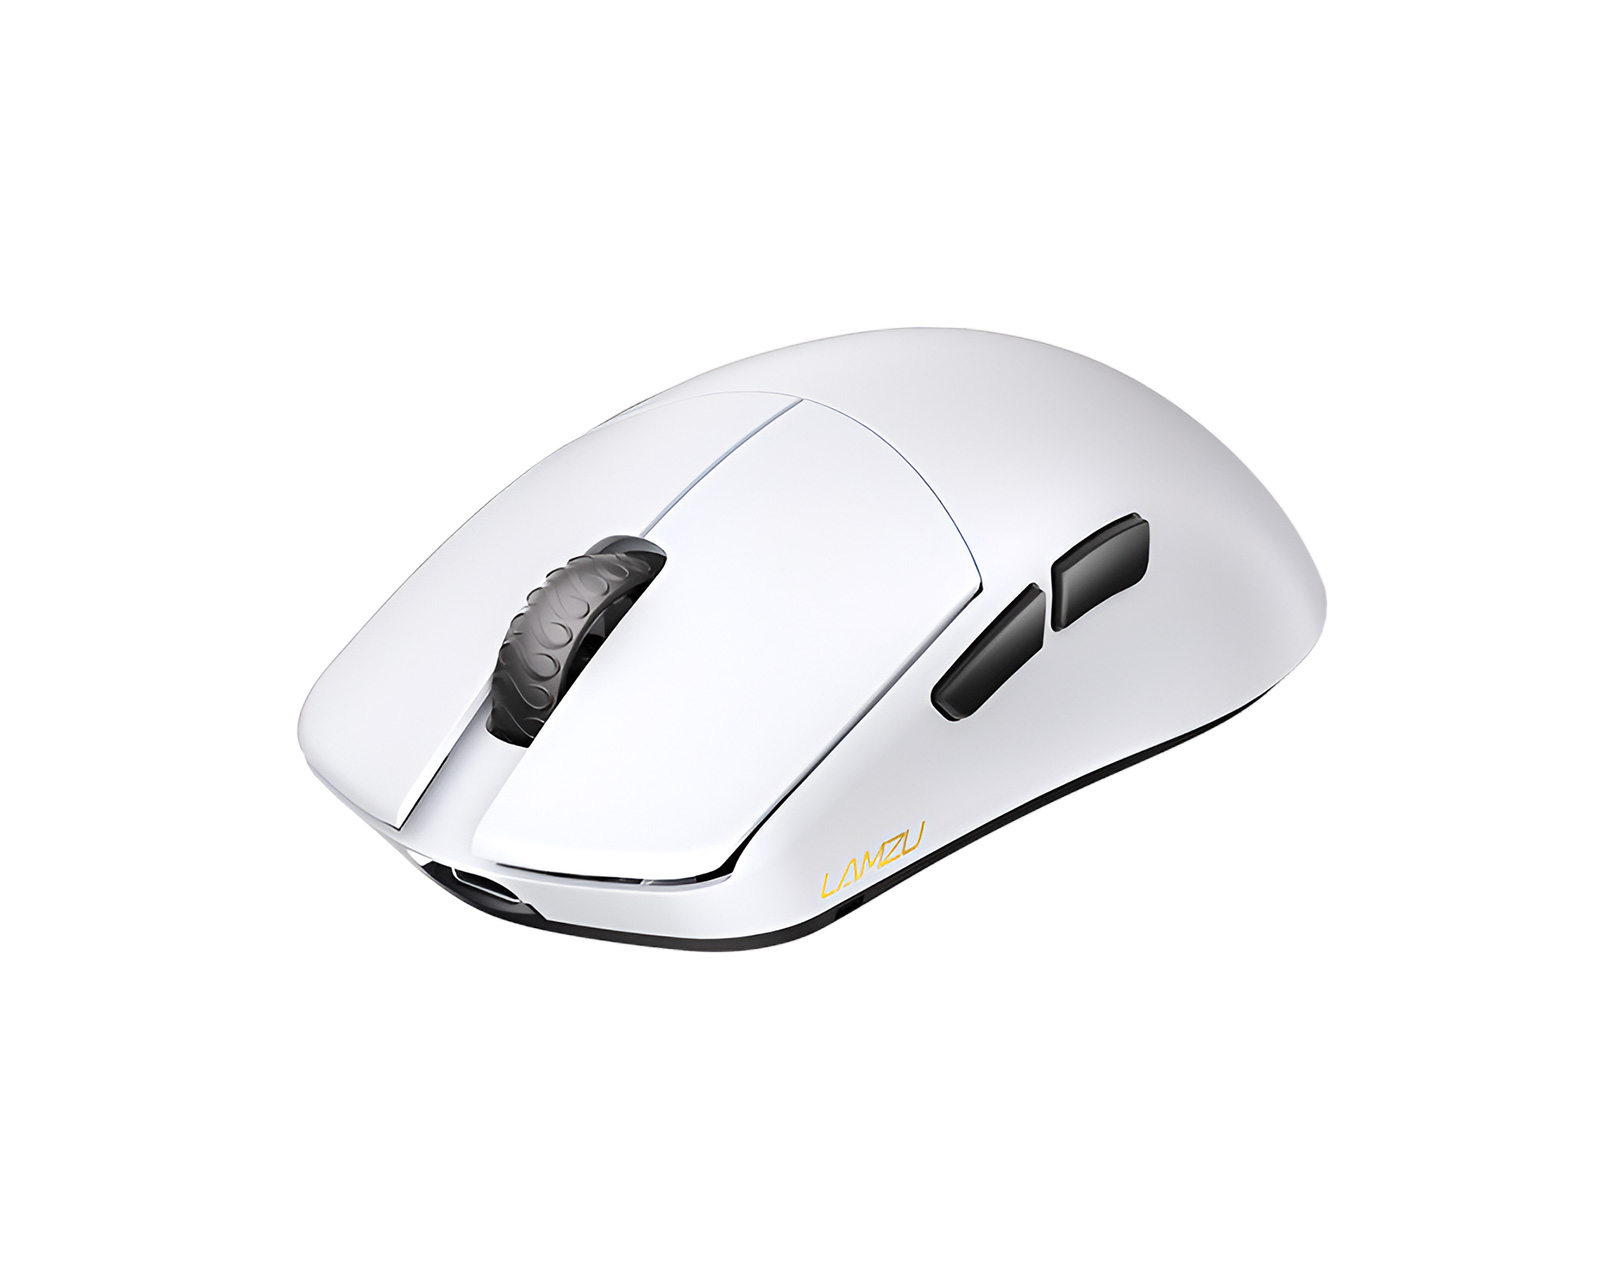 Lamzu MAYA Wireless Superlight Gaming Mouse - White